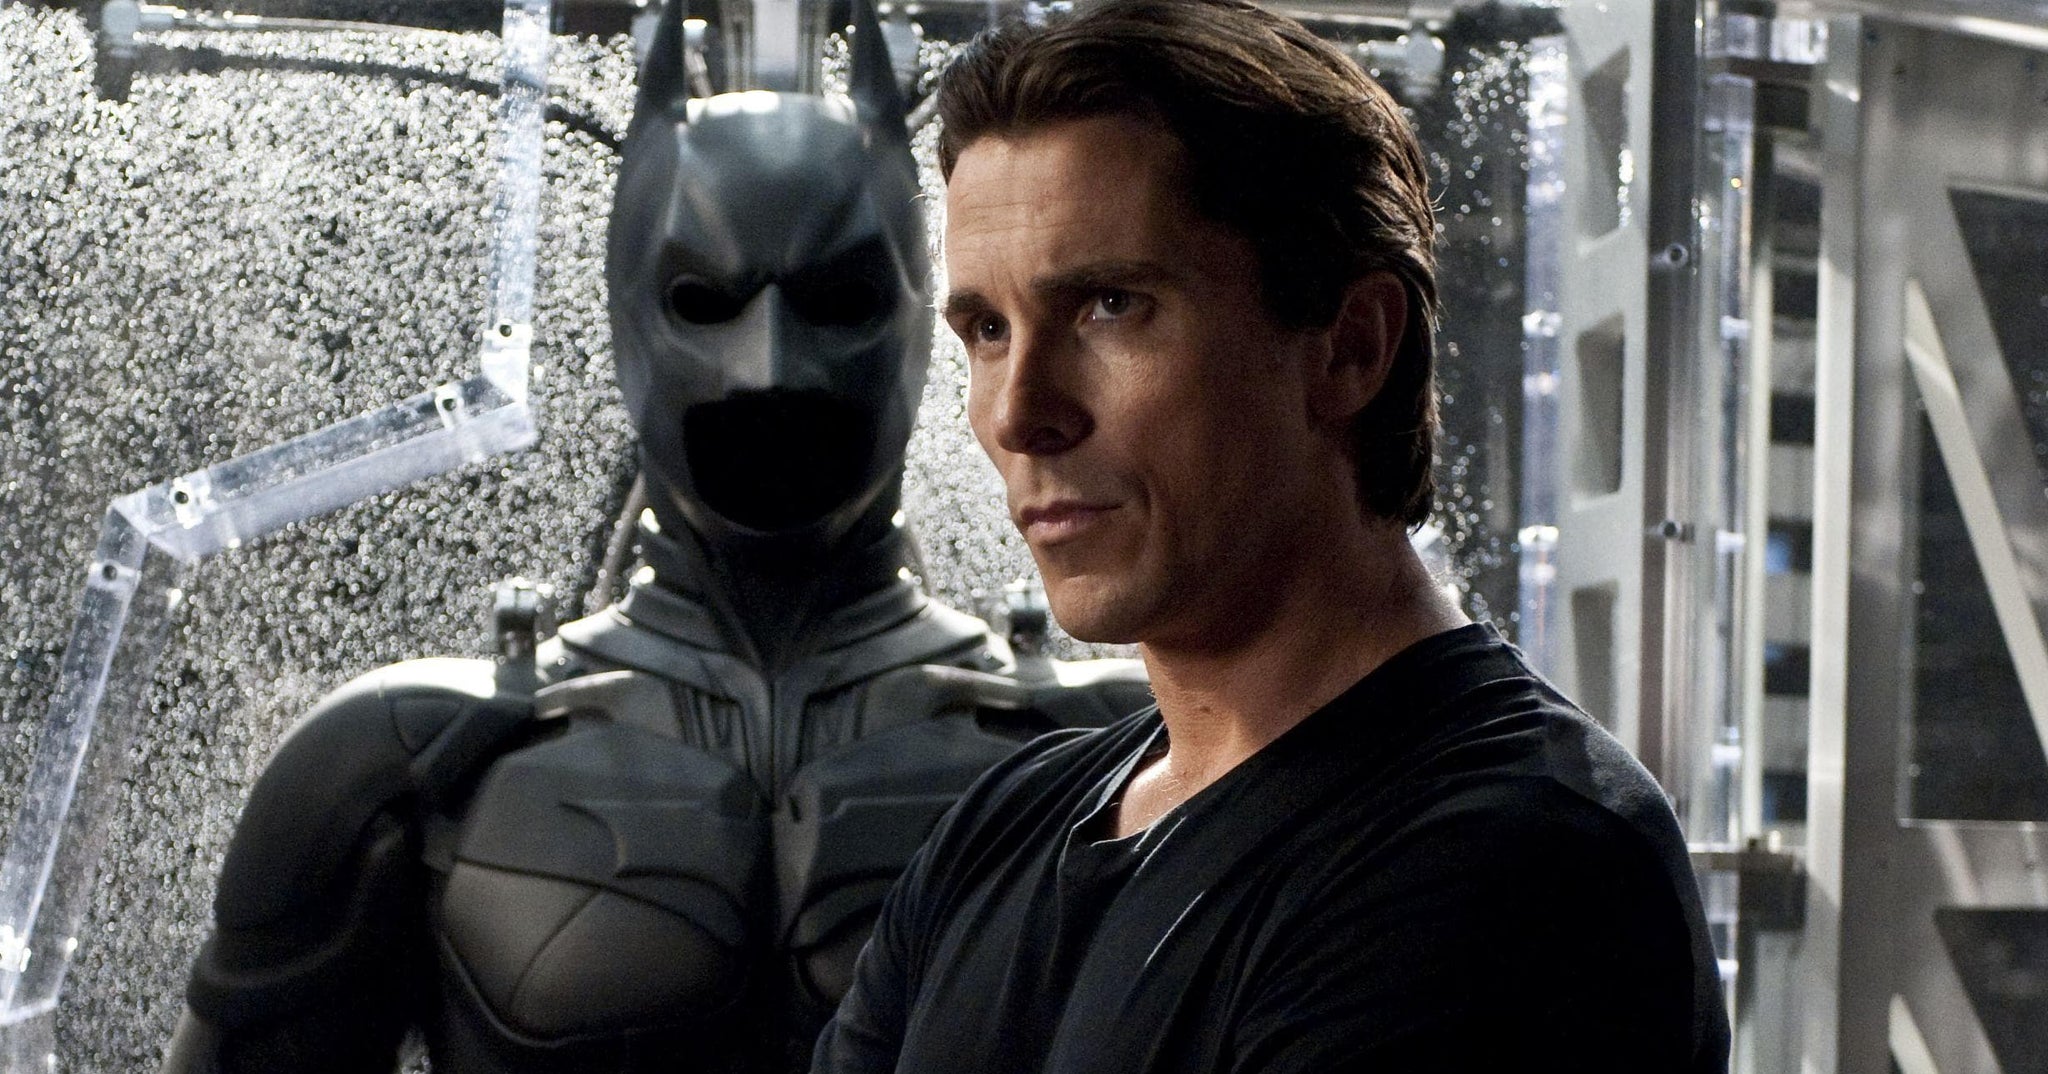 Christian Bale with his Batman suit